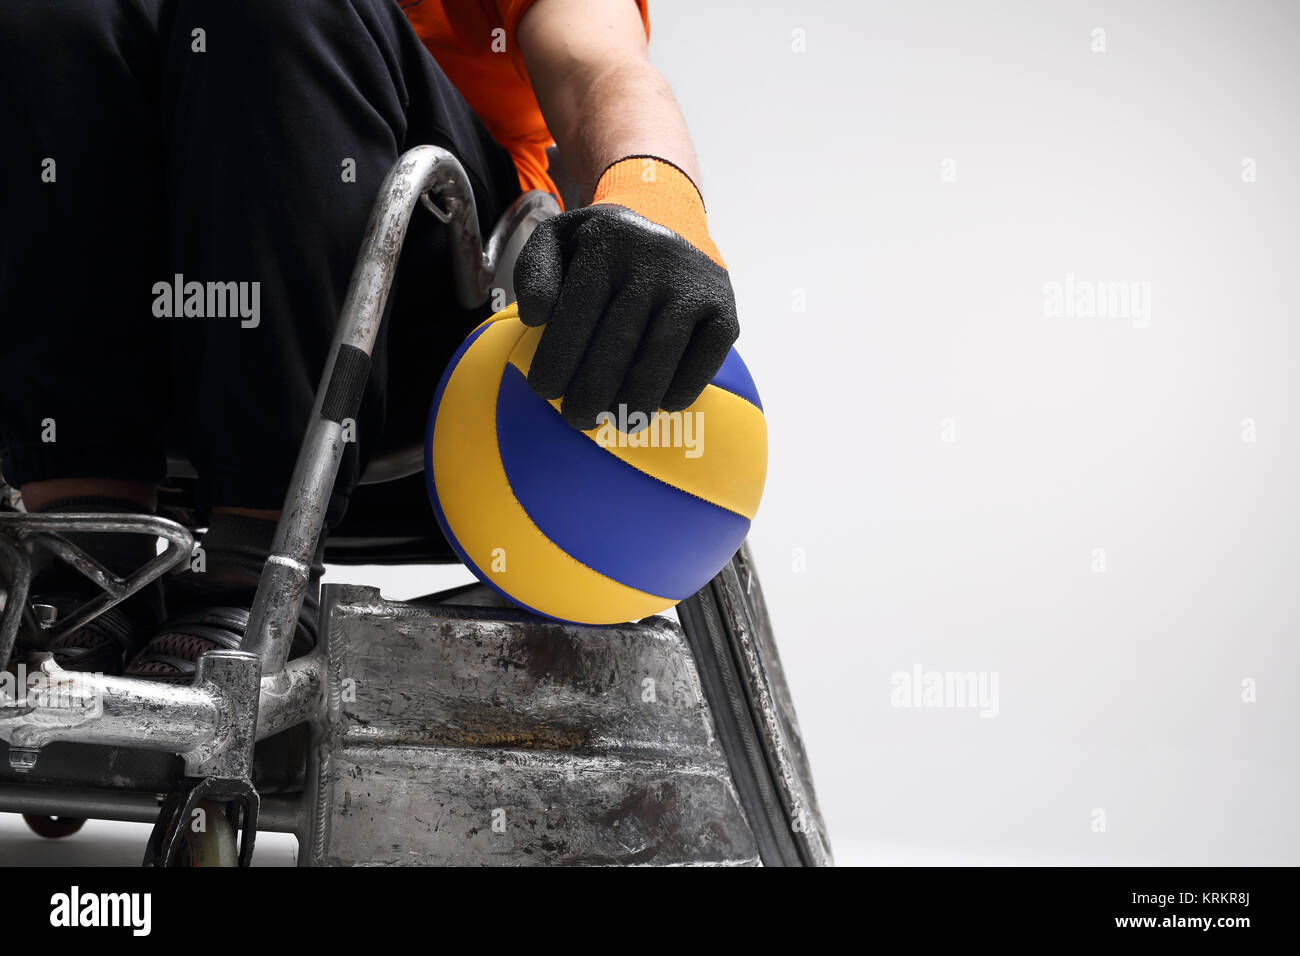 L'invalidité. Le sport pour les personnes handicapées Banque D'Images